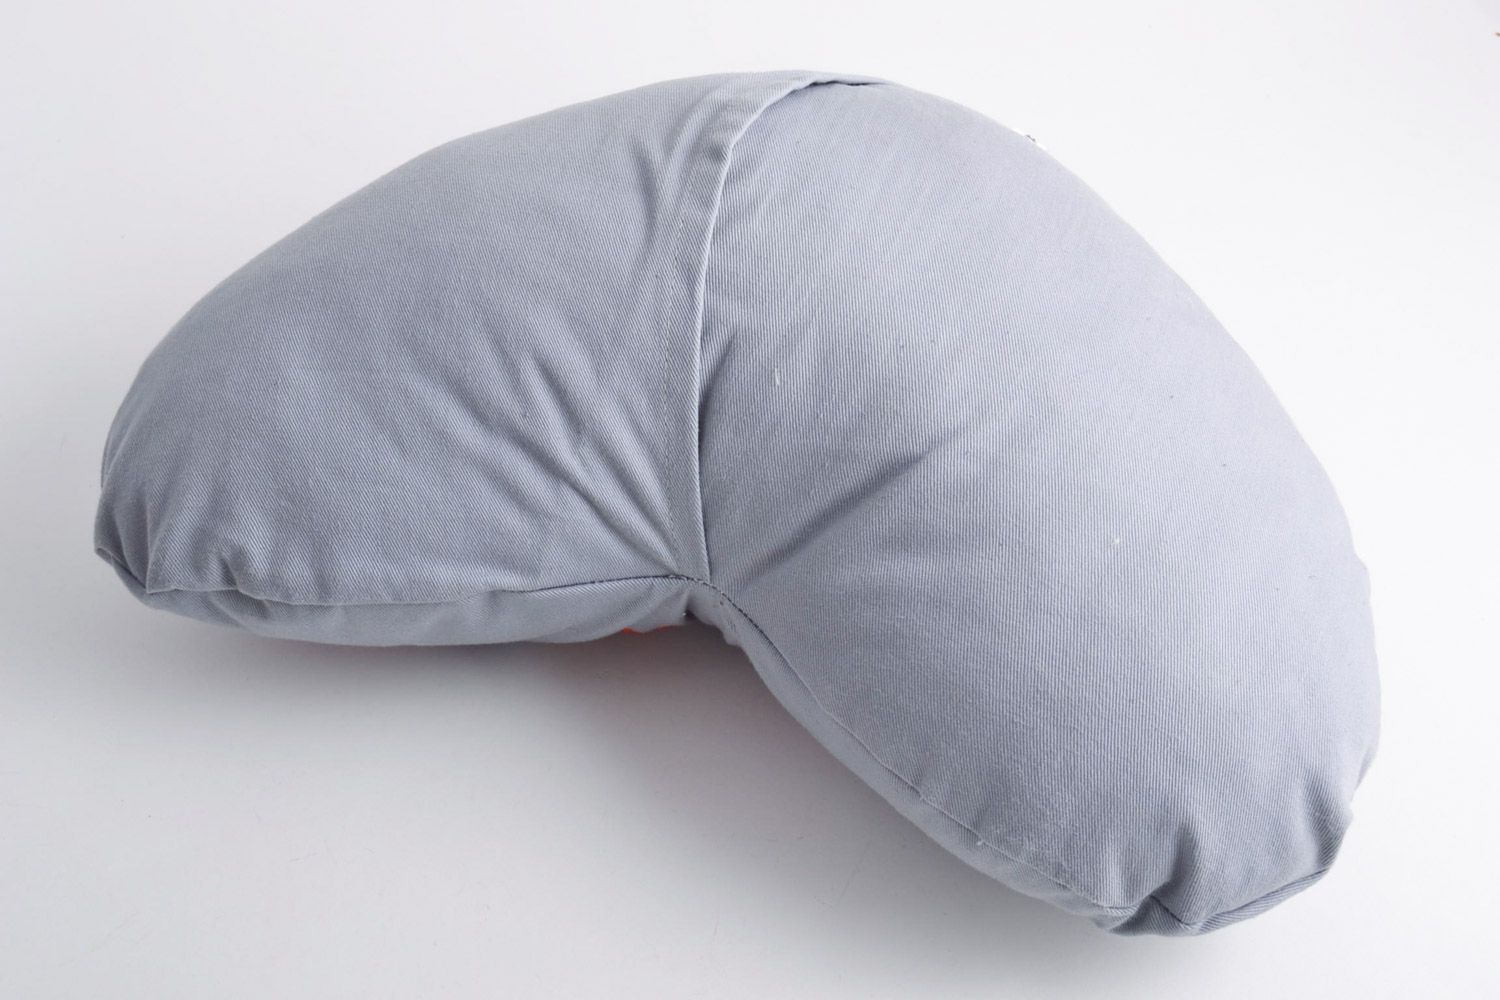 Красивая мягкая диванная подушка ручной работы с вышивкой тканевая в виде сердца фото 2